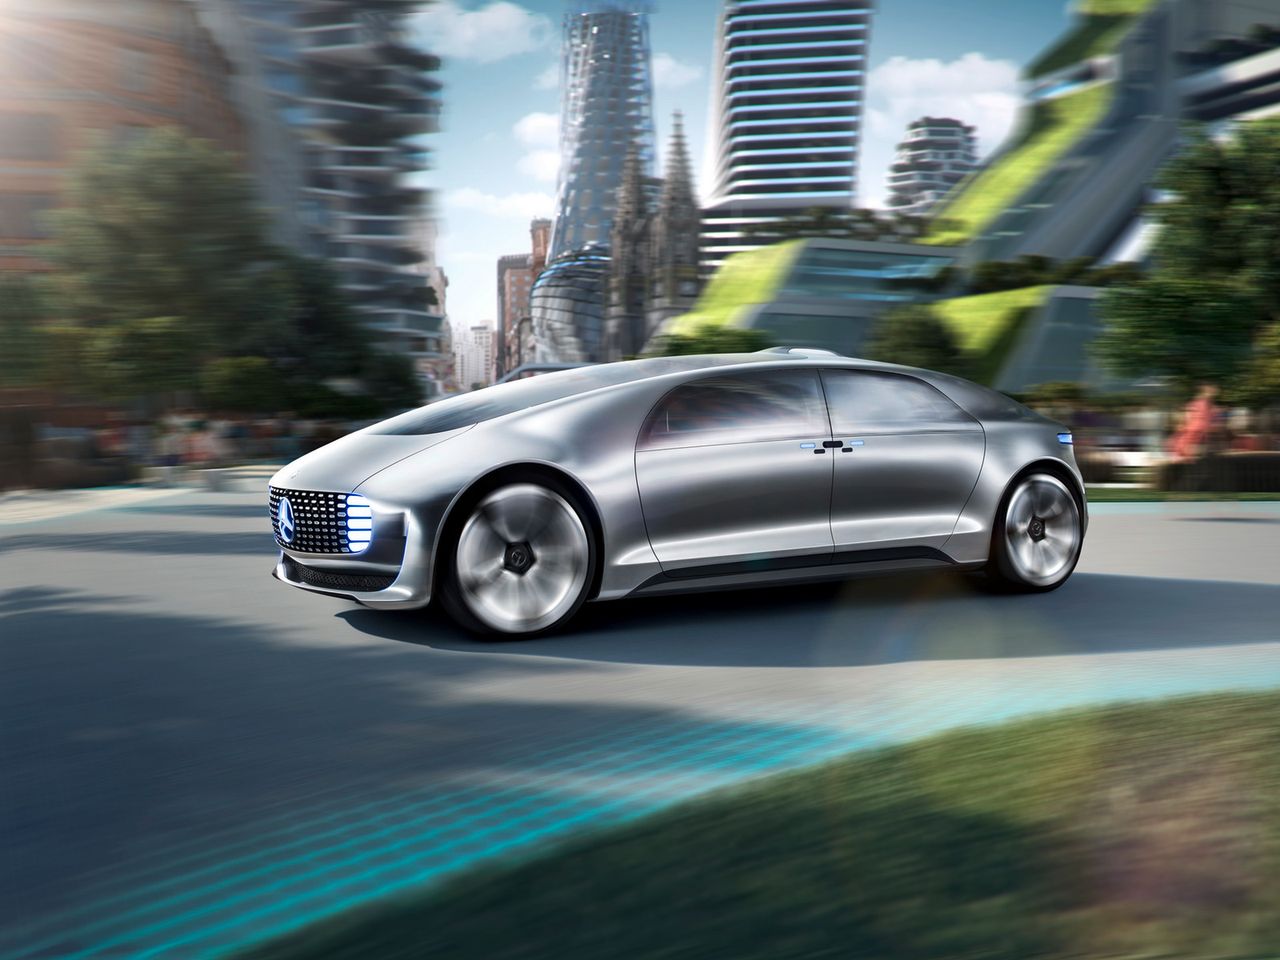 Mercedes-Benz F015 Luxury in Motion - futurystyczny koncept oficjalnie odsłonięty